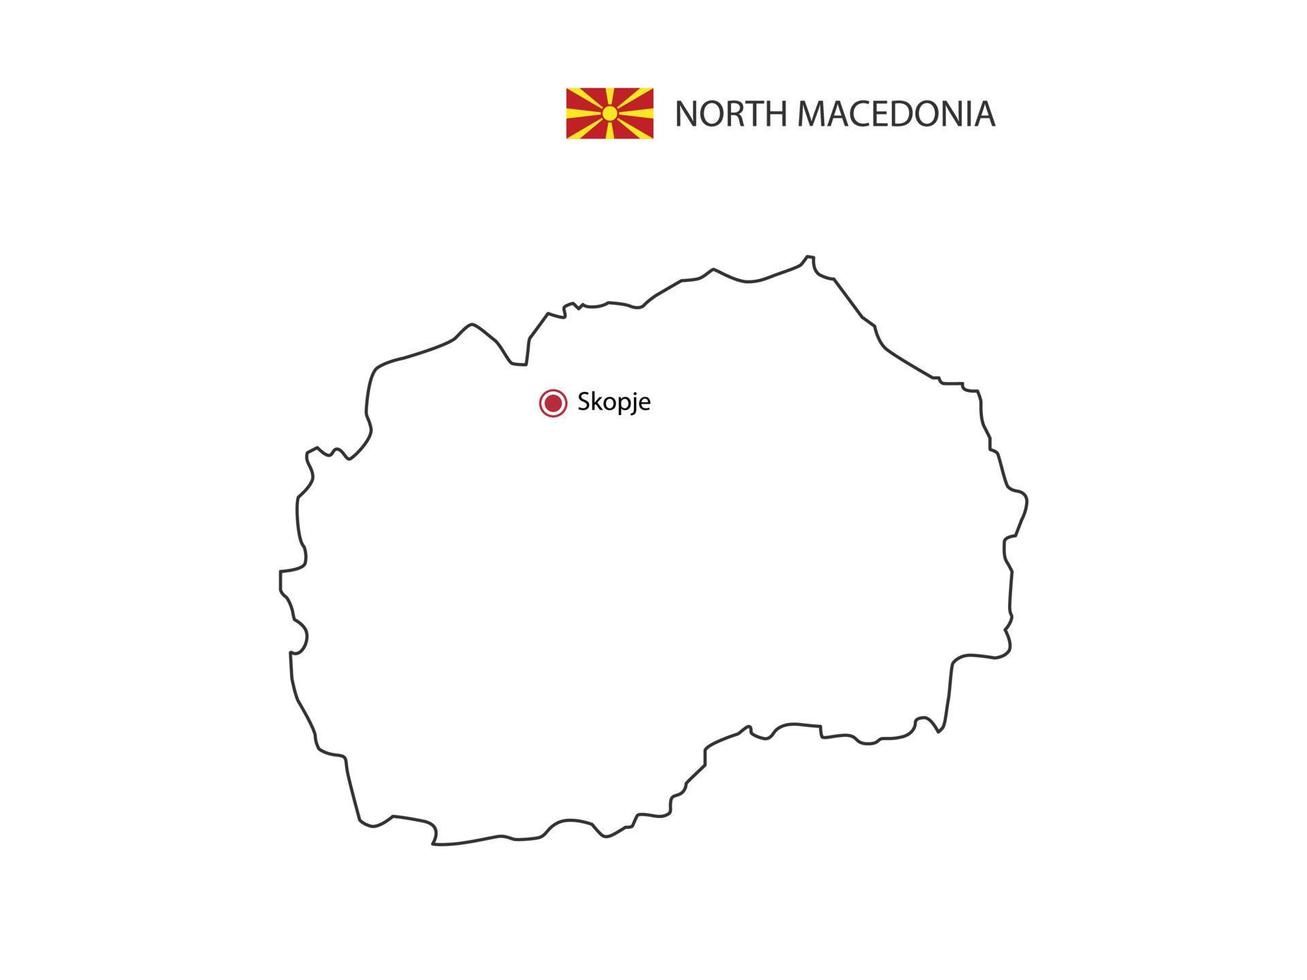 mano disegnare magro nero linea vettore di nord macedonia carta geografica con capitale città skopje su bianca sfondo.